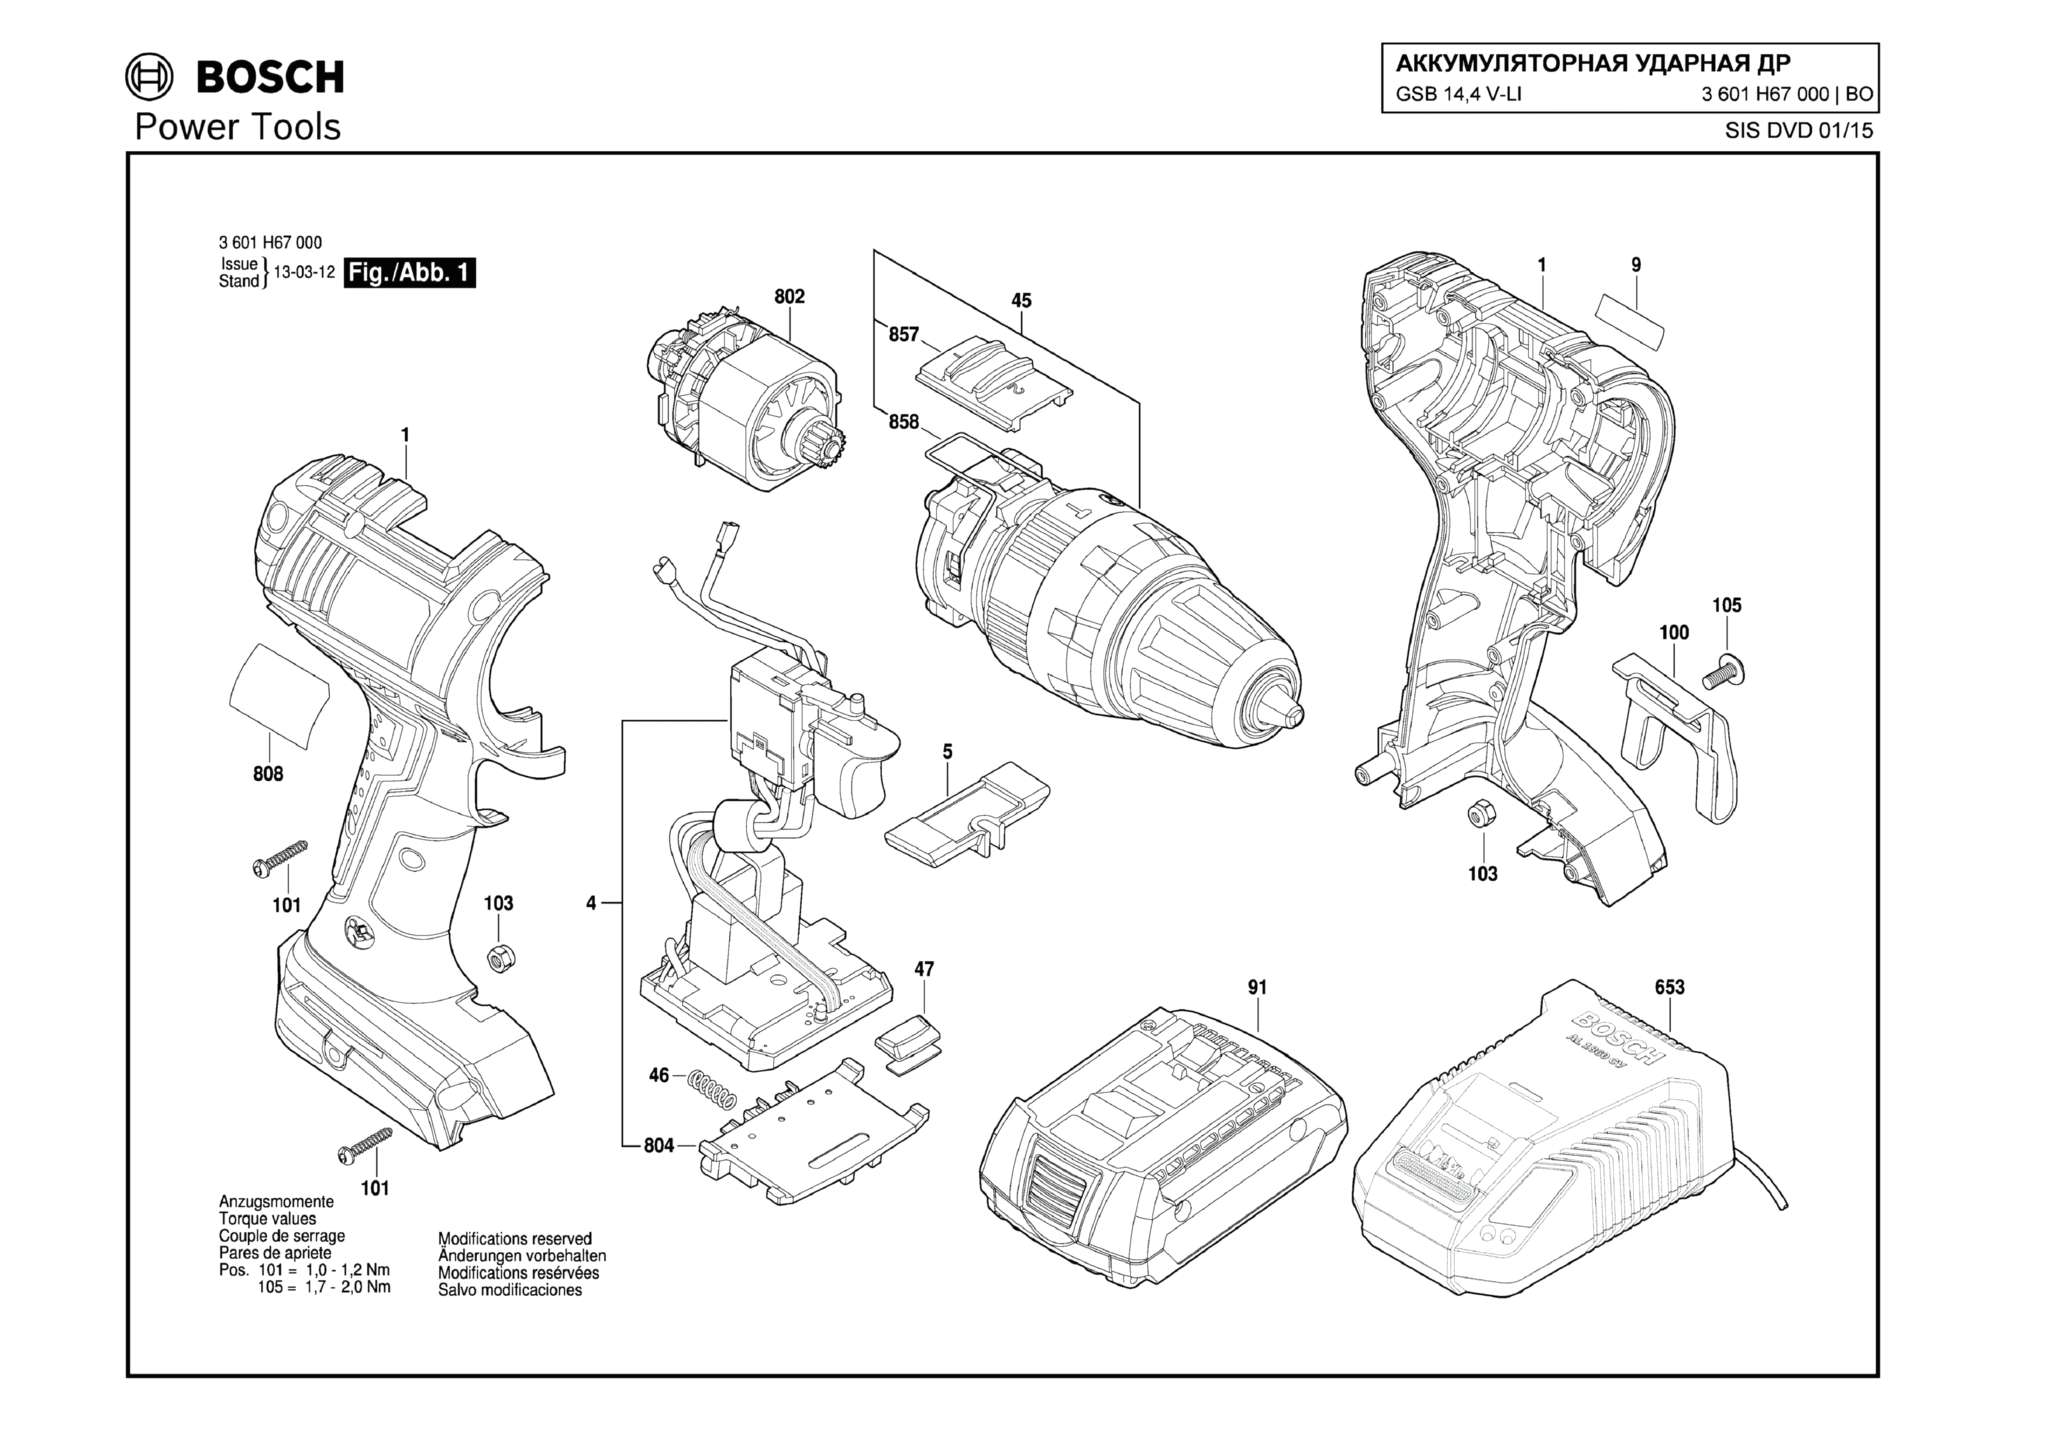 Запчасти, схема и деталировка Bosch GSB 14,4 V-LI (ТИП 3601H67000)